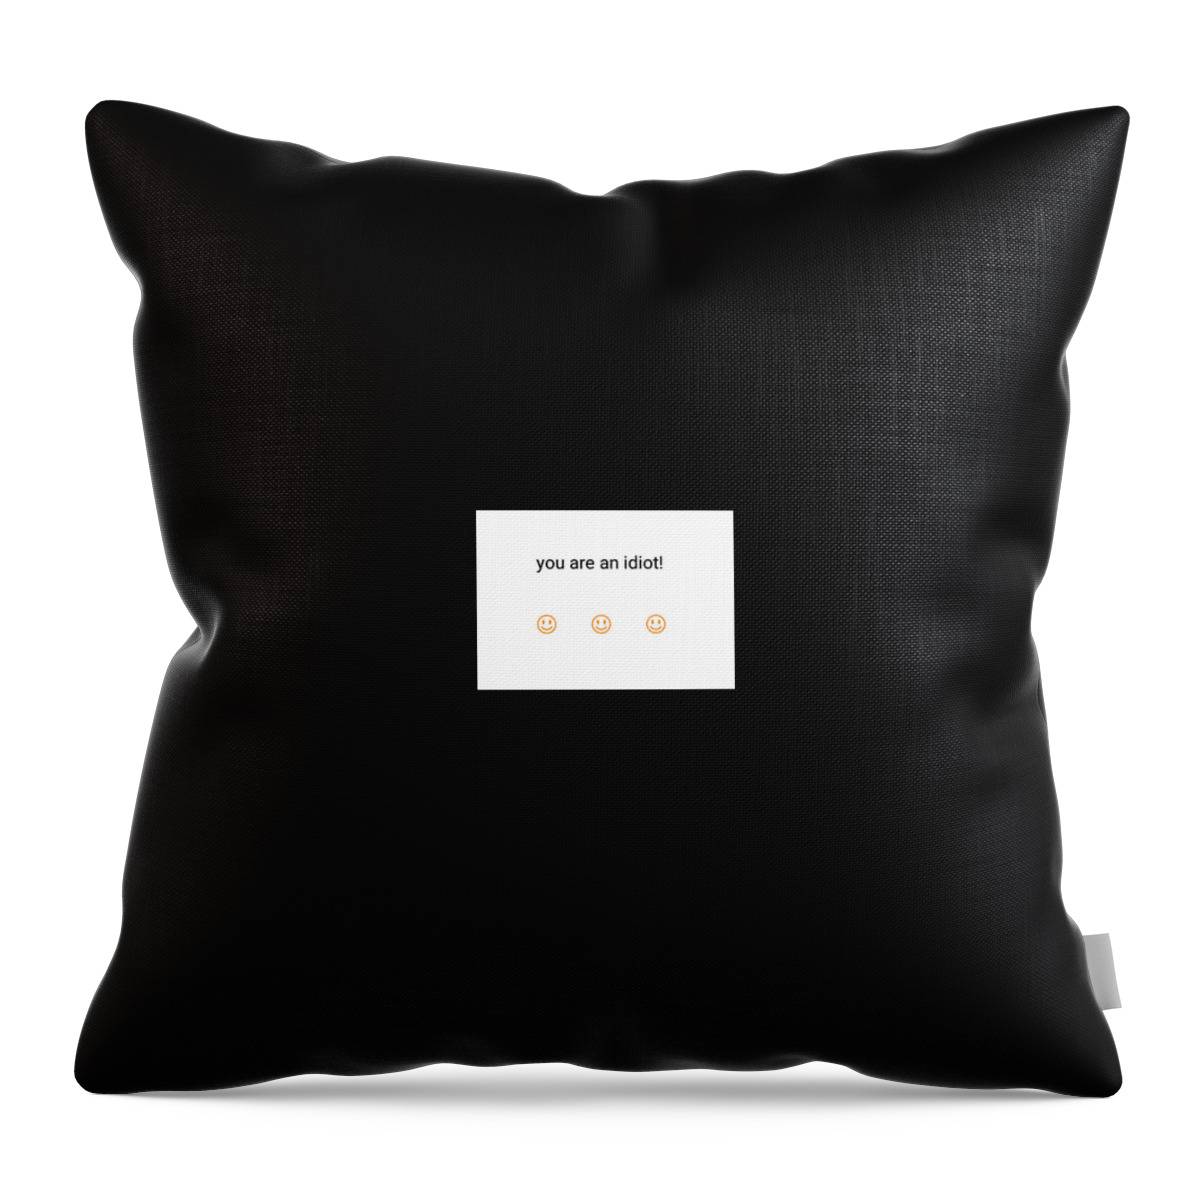 #emoji Throw Pillow featuring the digital art You are an idiot #1 by Sari Kurazusi